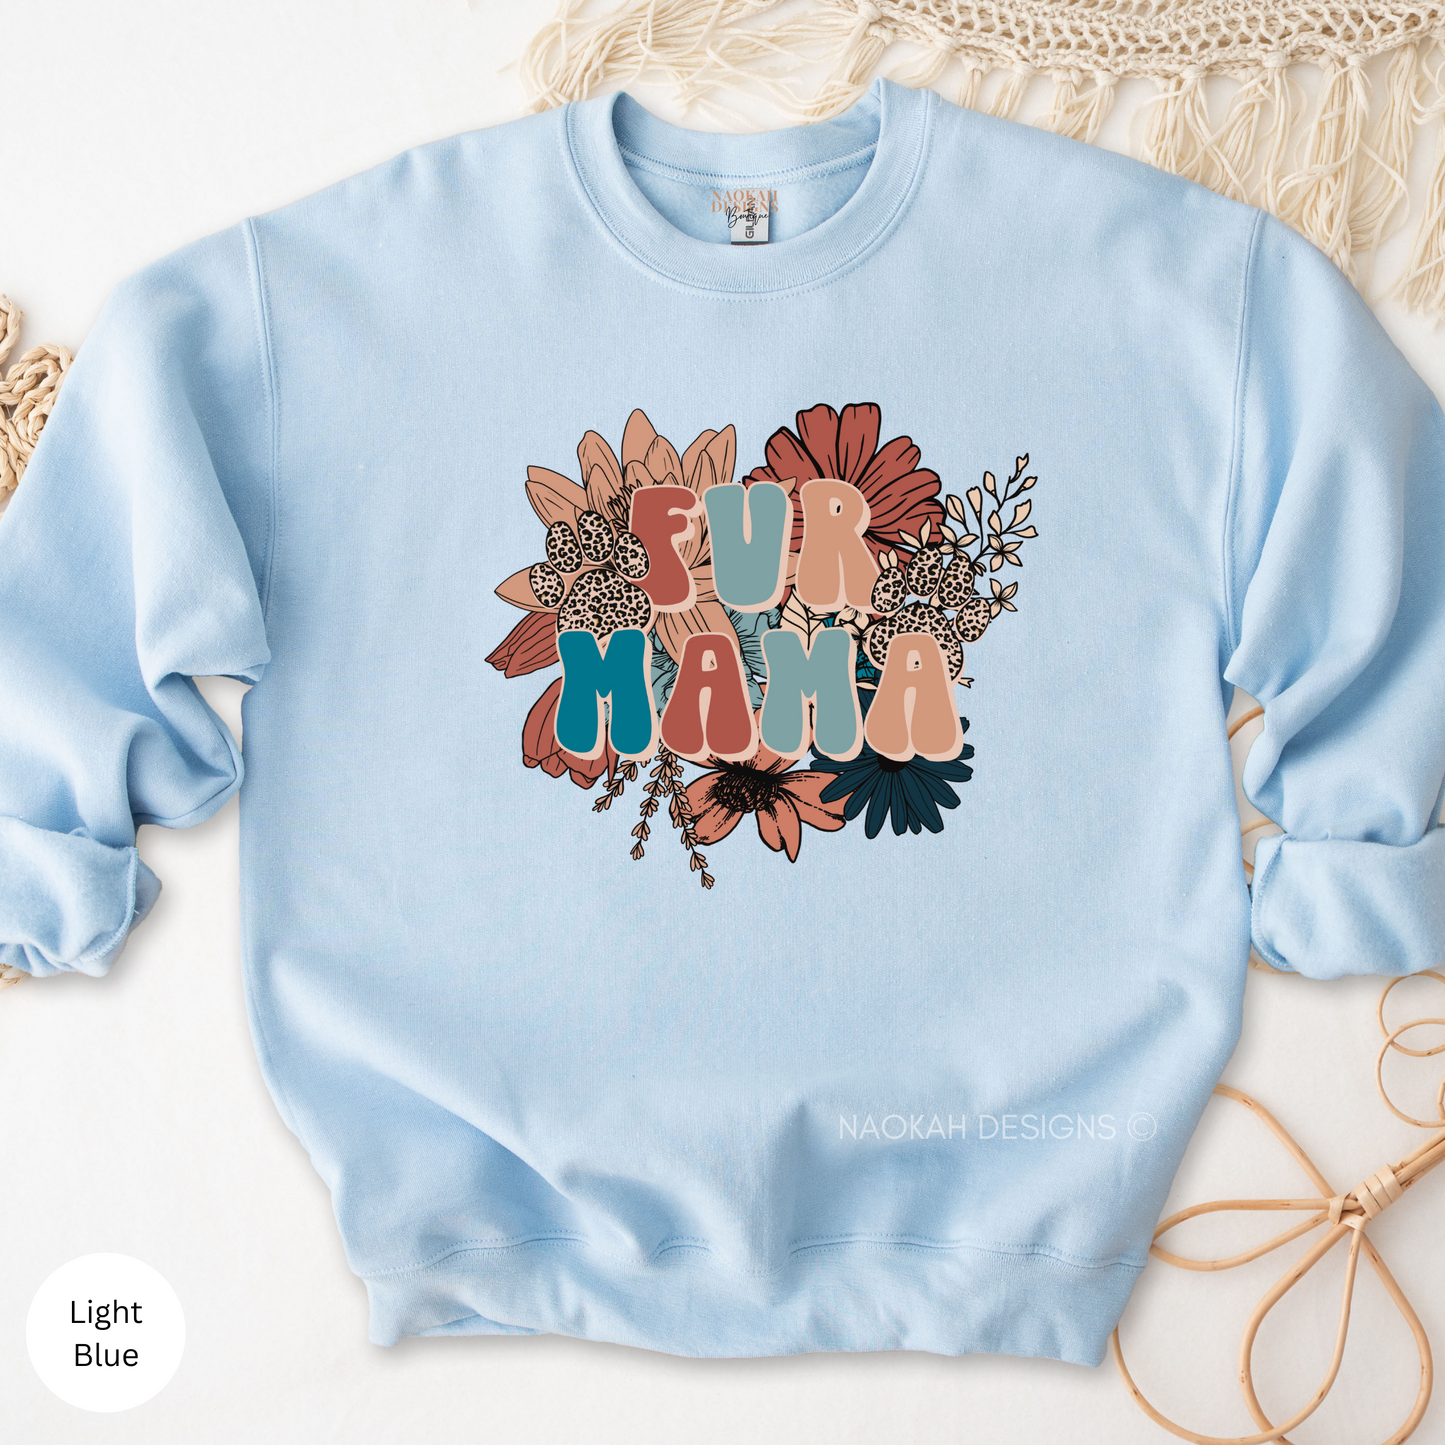 Fur Mama Sweater, Dog Mom Sweater, Cat Mom Sweater, Fur Mama Floral Shirt, Dog Lover Mom Shirt, Cat Lover Mom Shirt, Fur Babies Shirt